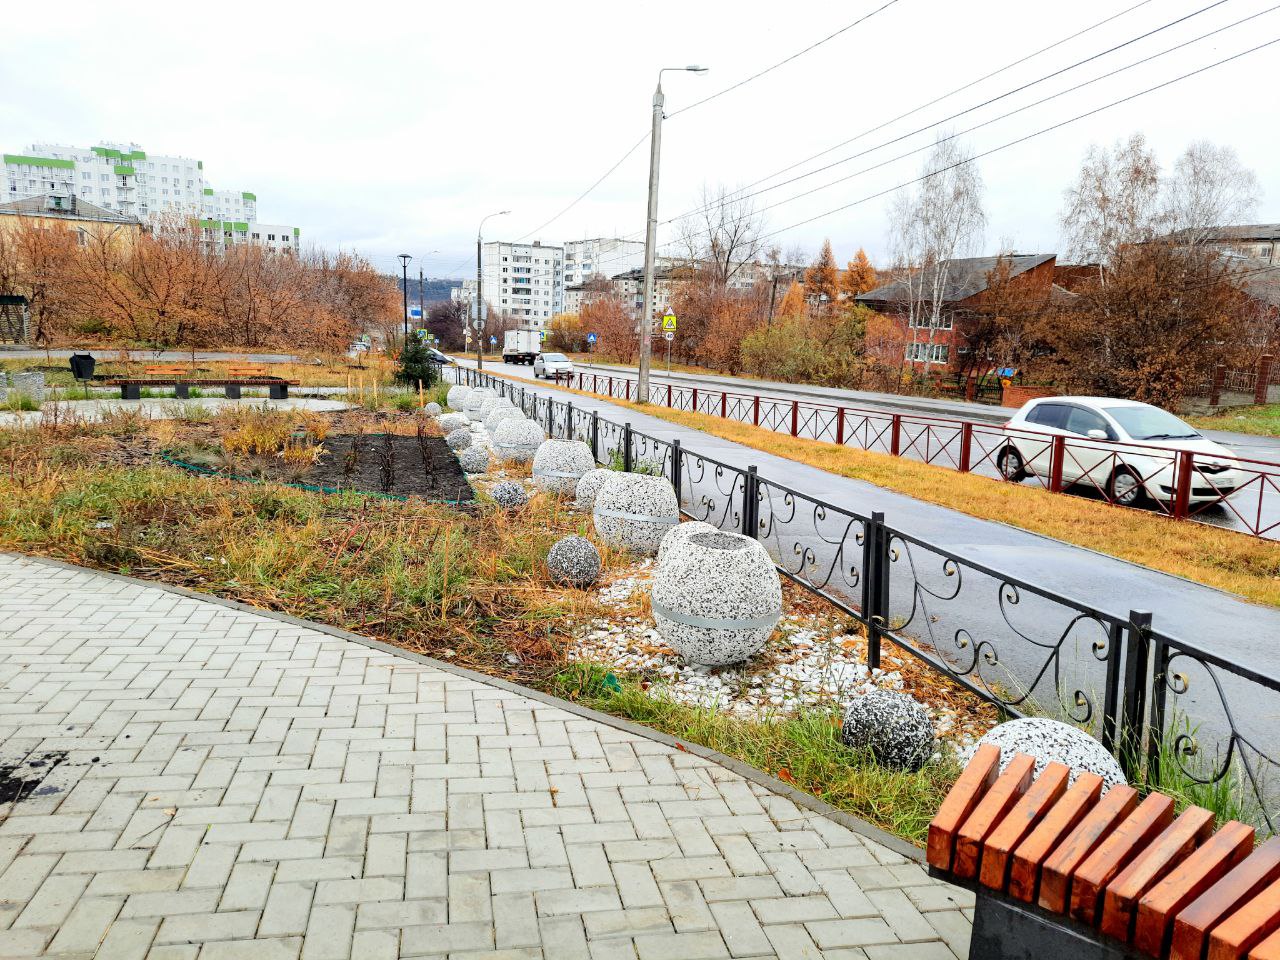 Мини-сквер с вазонами и многолетними кустарниками благоустроили на бульваре Рябикова в Иркутске